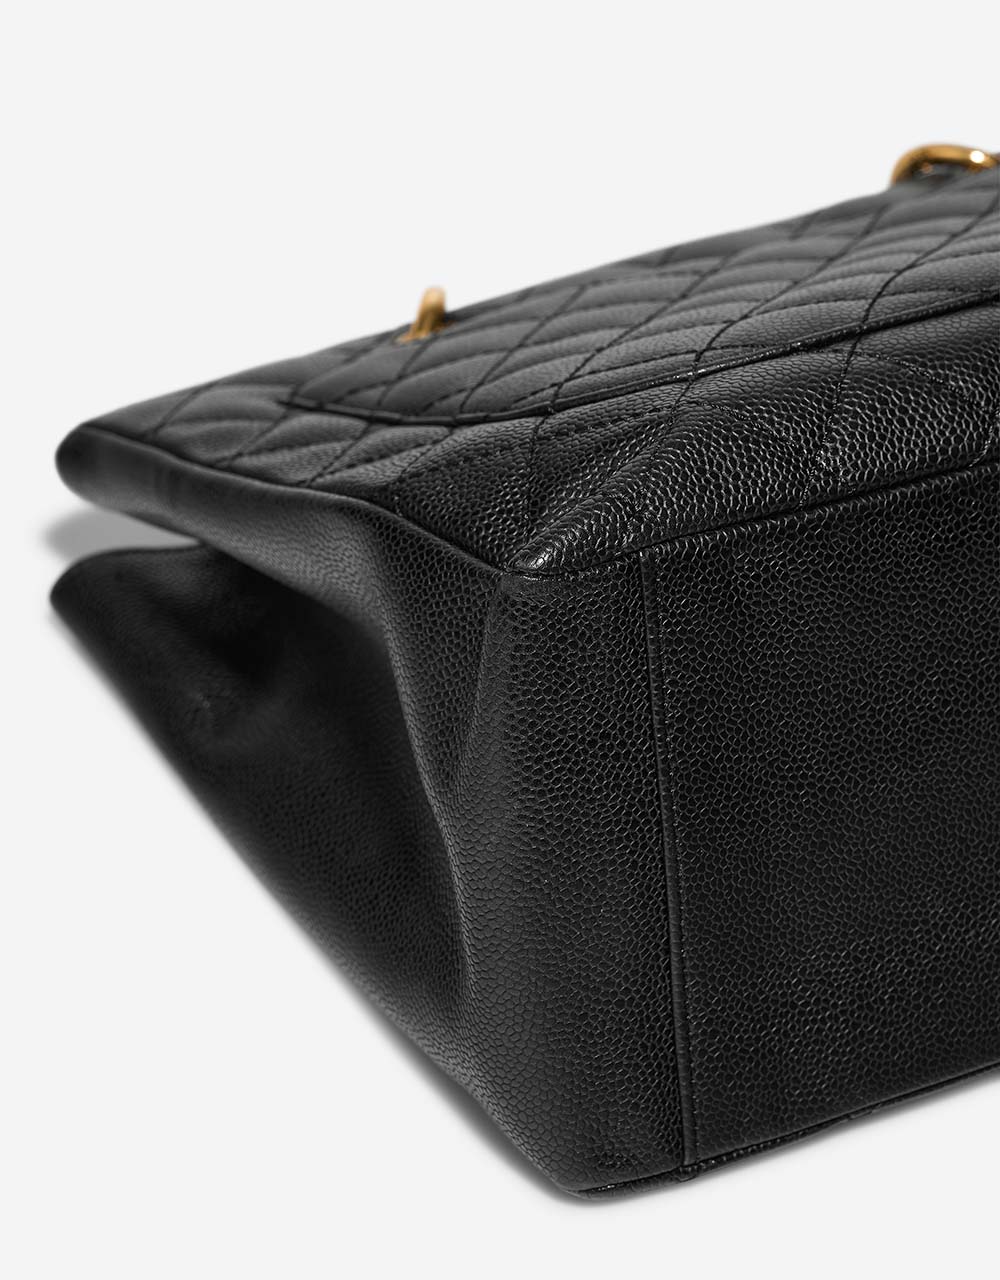 Chanel ShoppingTote Grande Schwarz Gebrauchsspuren | Verkaufen Sie Ihre Designertasche auf Saclab.com